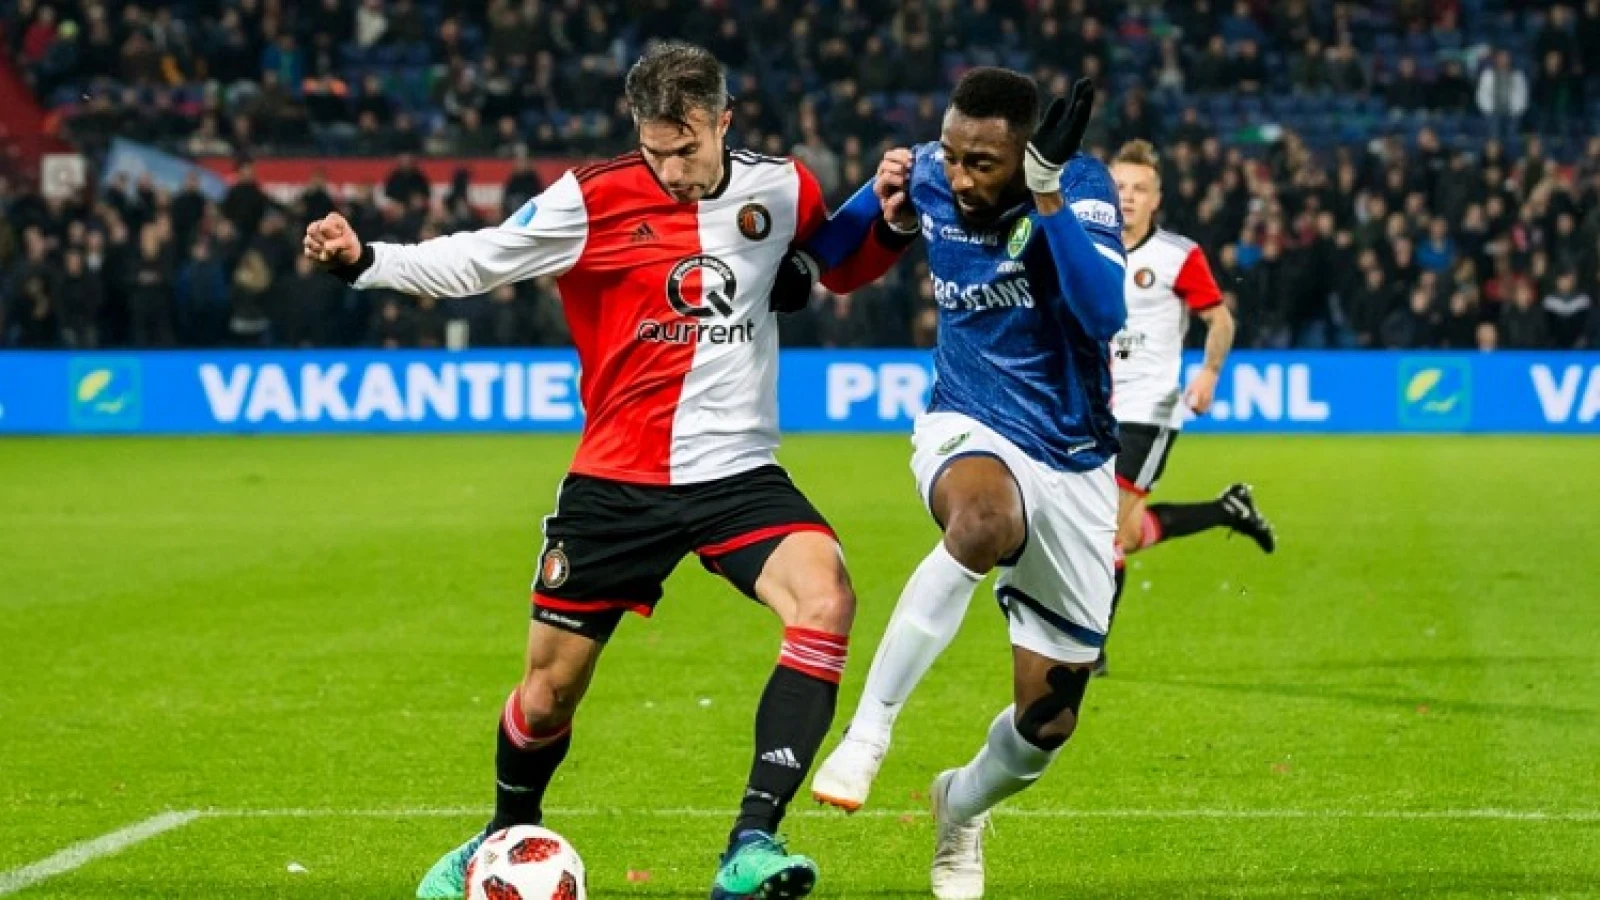 LIVE | Feyenoord - ADO Den Haag 5-1 | Einde wedstrijd